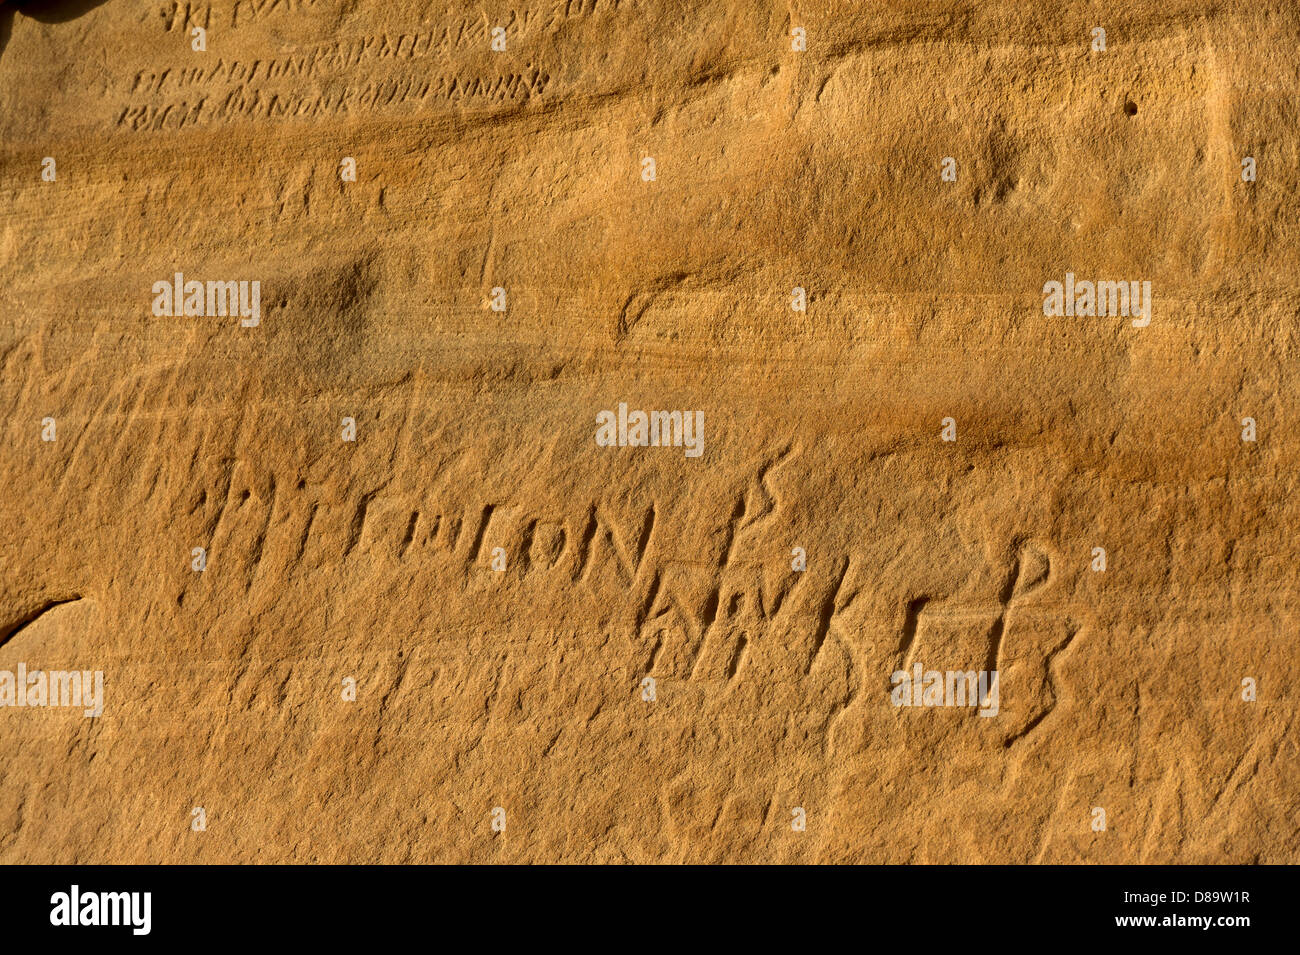 Ägypten-Sinai Wüste Felsen Berg Sand Zeichen zeichnen Bilder Granit Felsen Kunst Beduinen Saint Catherine Straße seltene Felsformationen Stockfoto